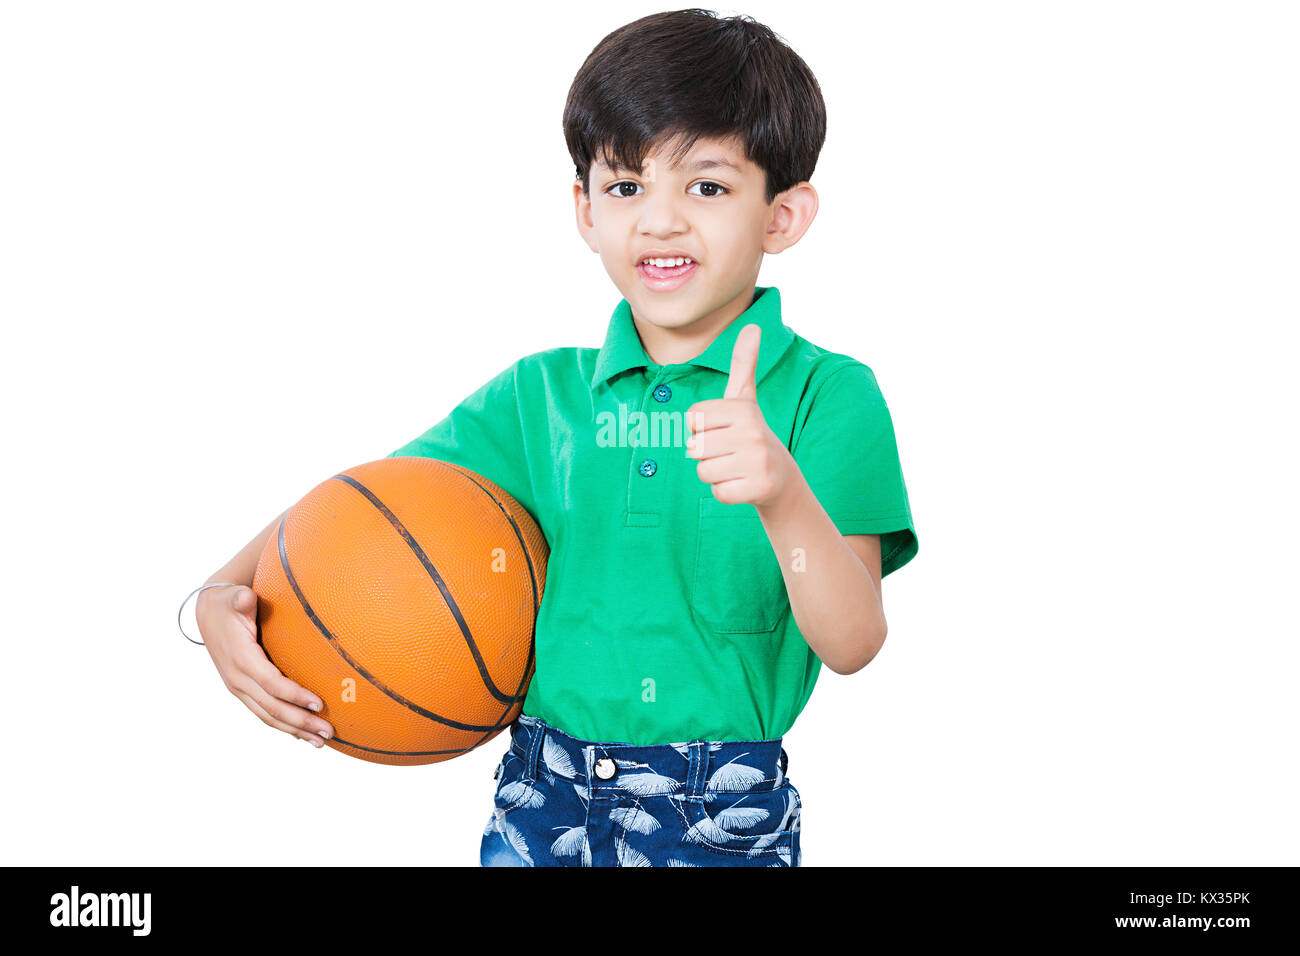 Gioco di allenamento di basket. Bambino sorridente con palla da basket che  mostra il pollice in